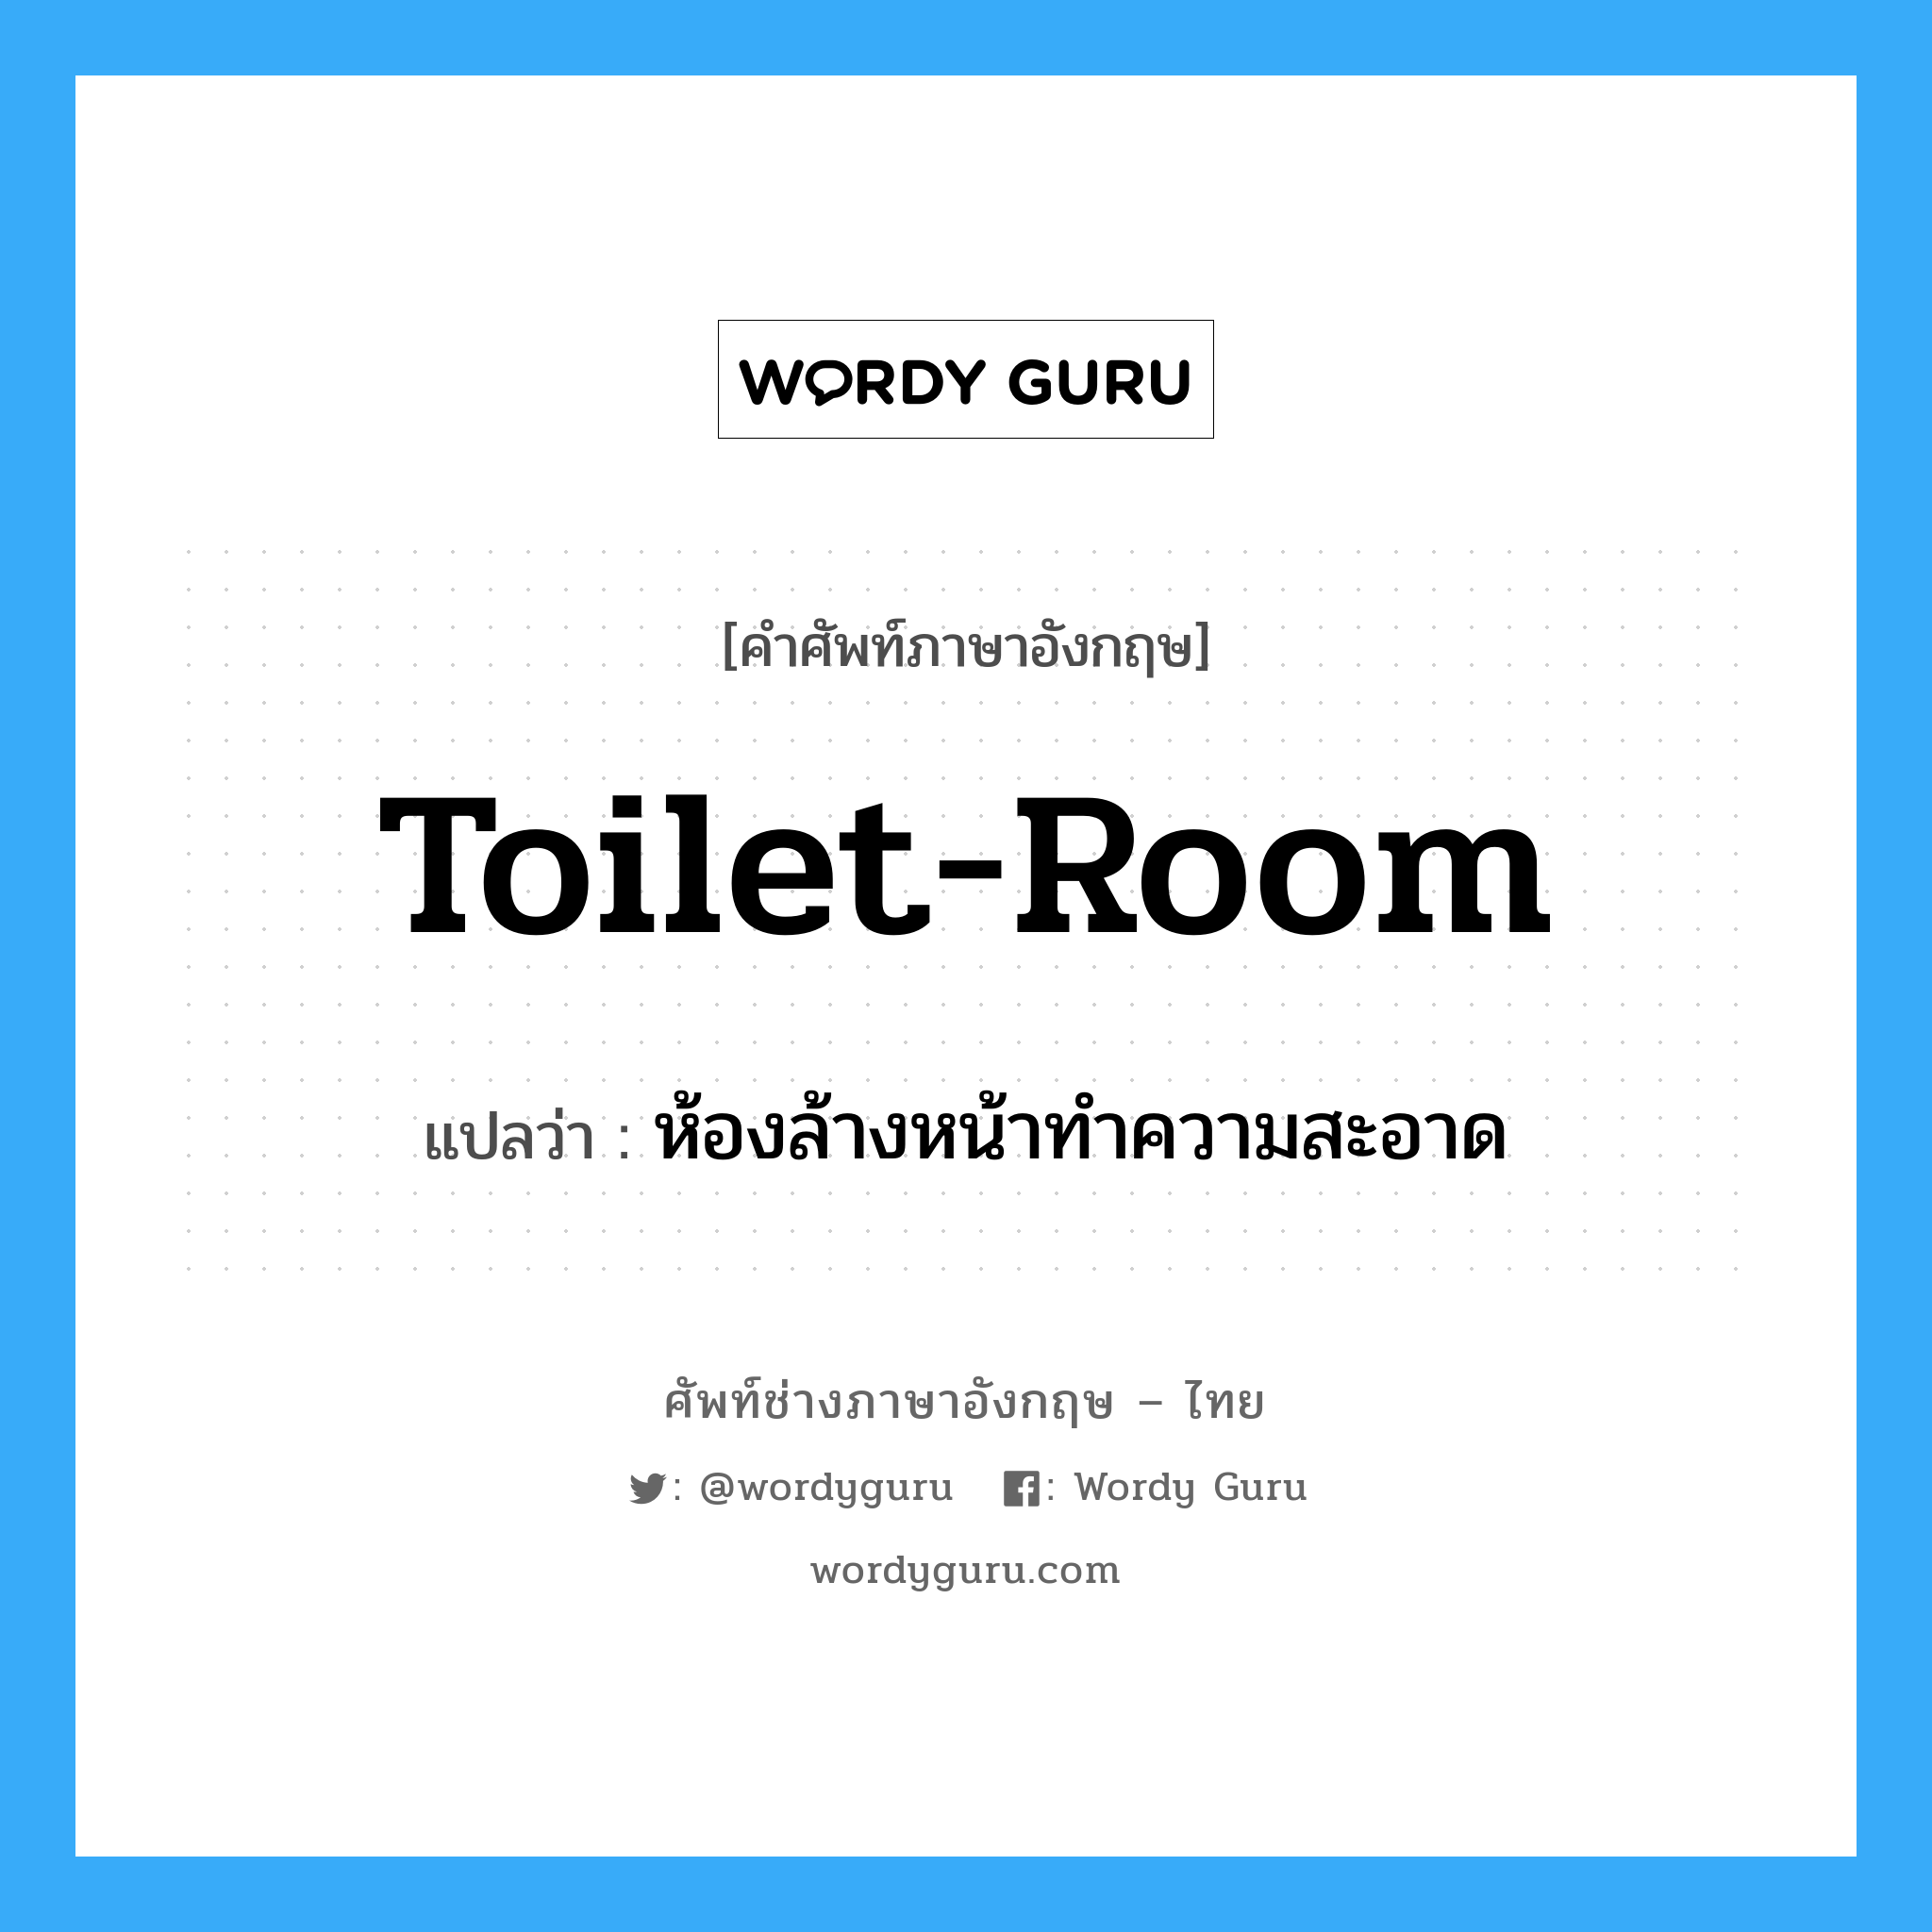 ห้องล้างหน้าทำความสะอาด ภาษาอังกฤษ?, คำศัพท์ช่างภาษาอังกฤษ - ไทย ห้องล้างหน้าทำความสะอาด คำศัพท์ภาษาอังกฤษ ห้องล้างหน้าทำความสะอาด แปลว่า toilet-room